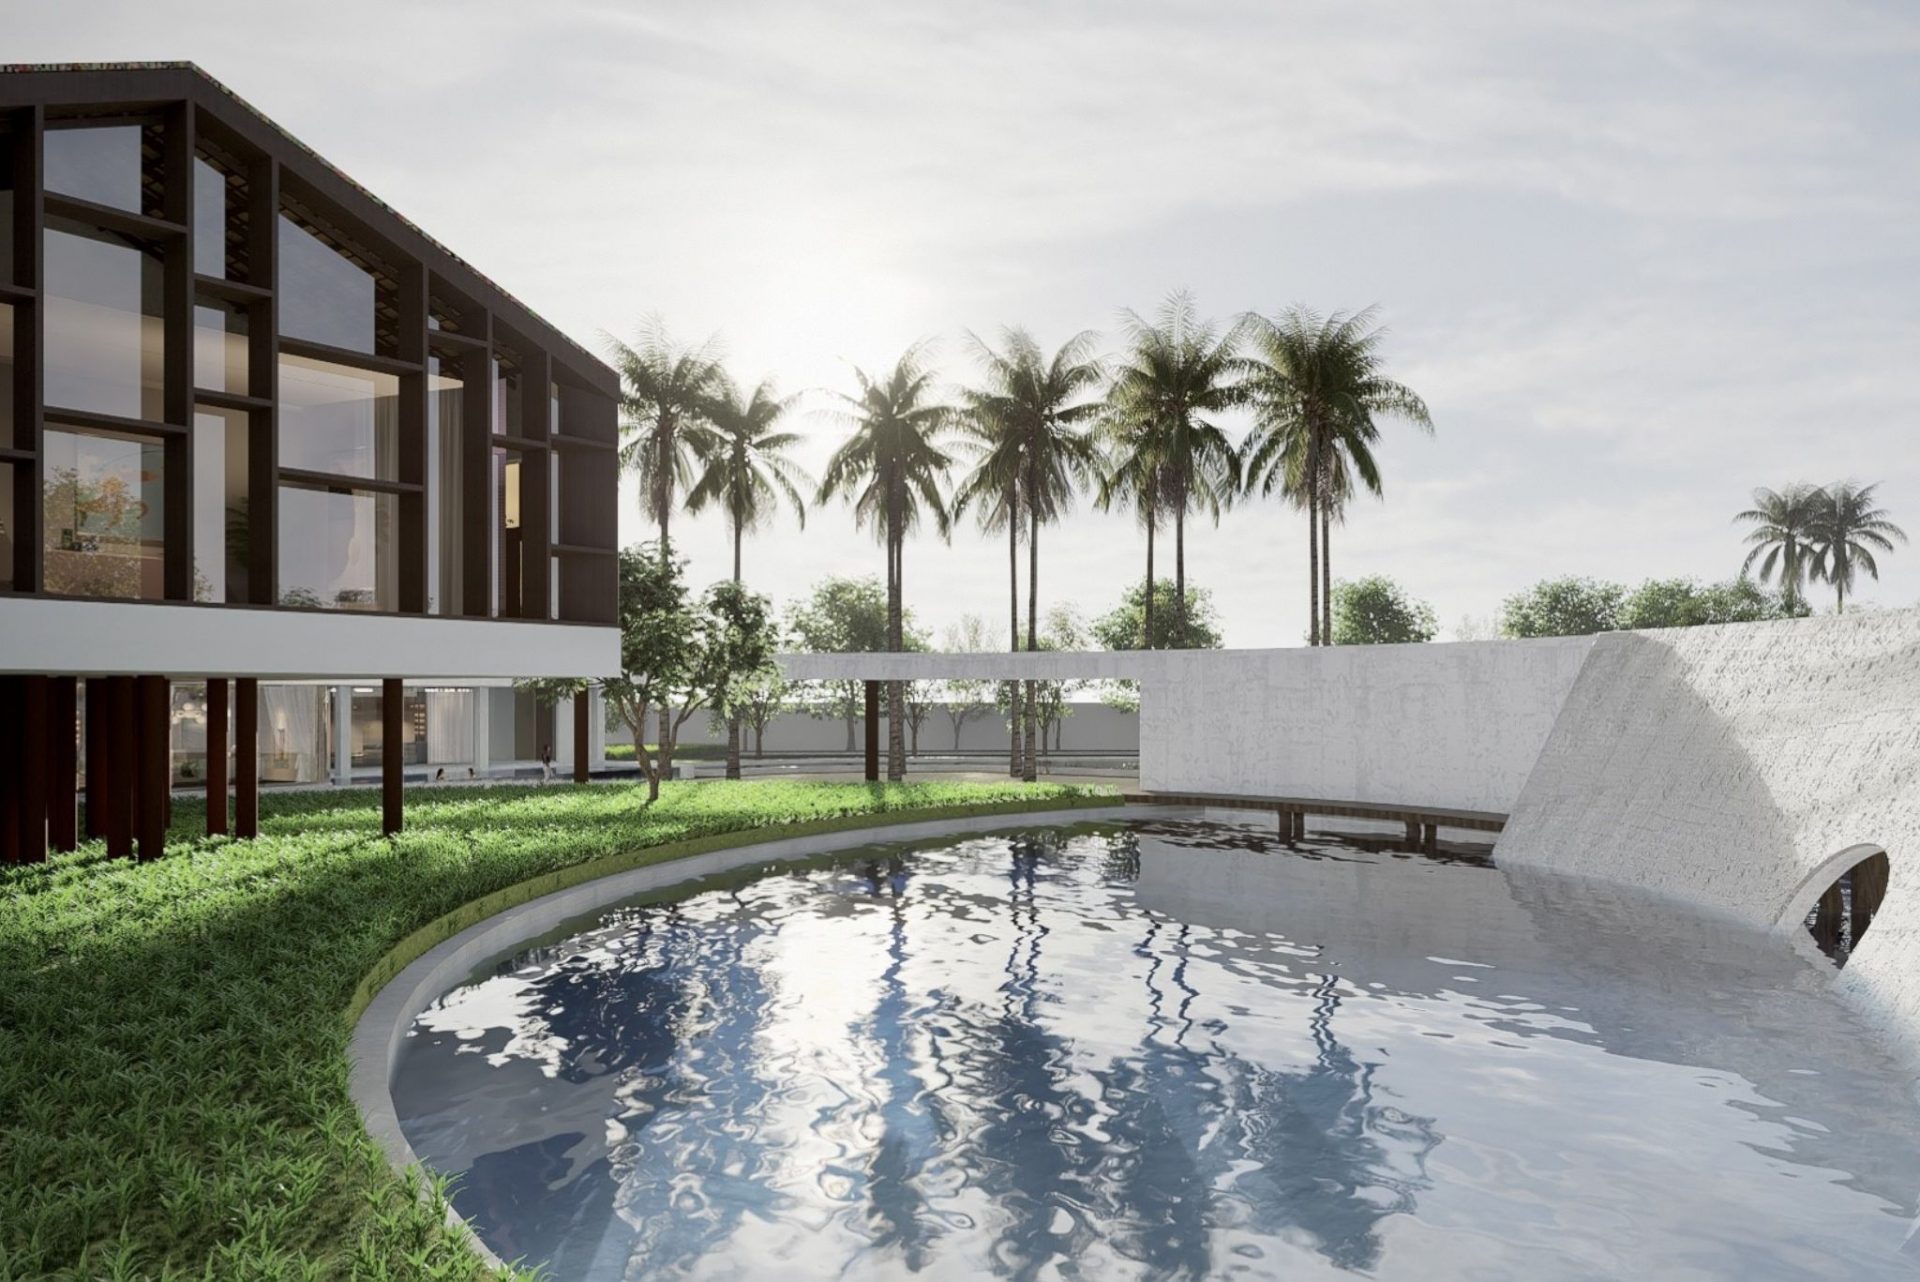 Villa Architecture in Cambodia